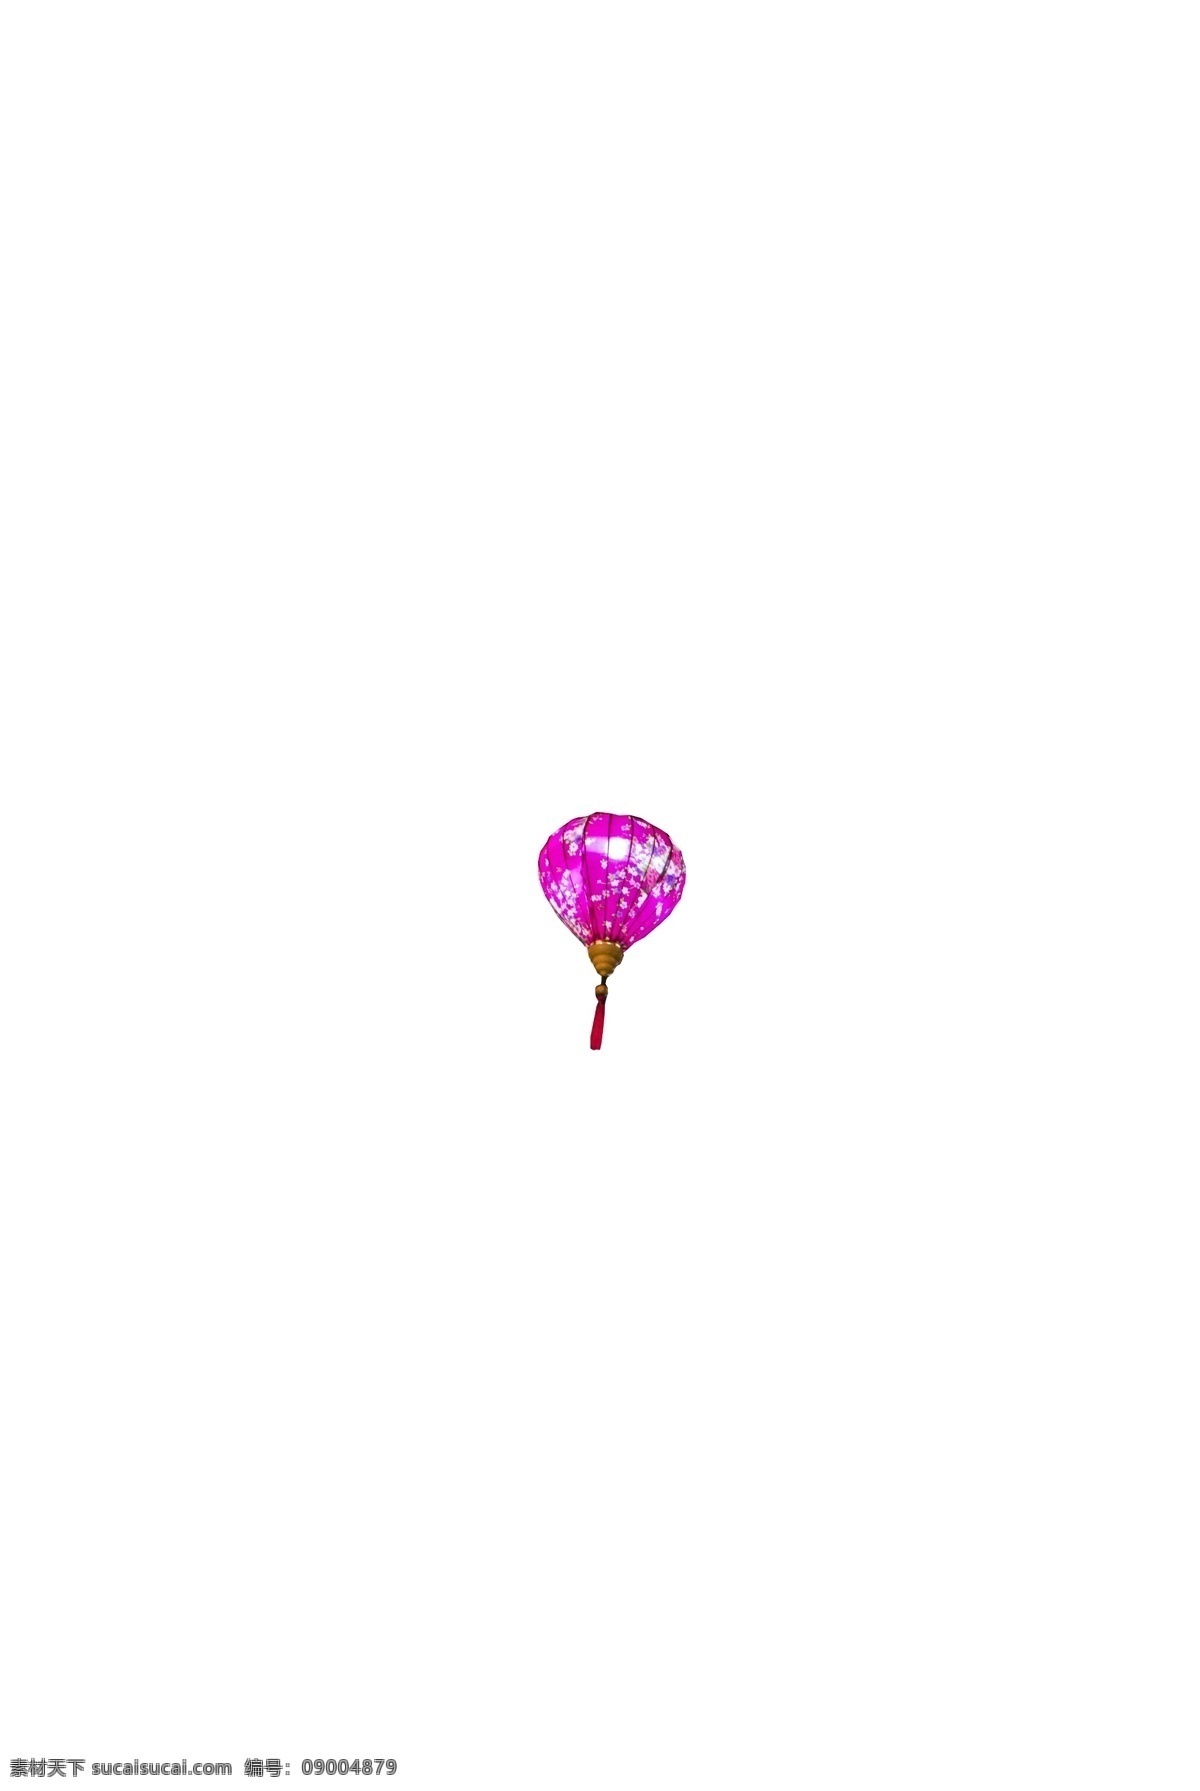 2019 节日 装扮 悬挂 式 彩色 气球 暖色灯光 彩色气球 炫彩装扮 多彩缤纷装饰 夜空点缀 色彩长廊